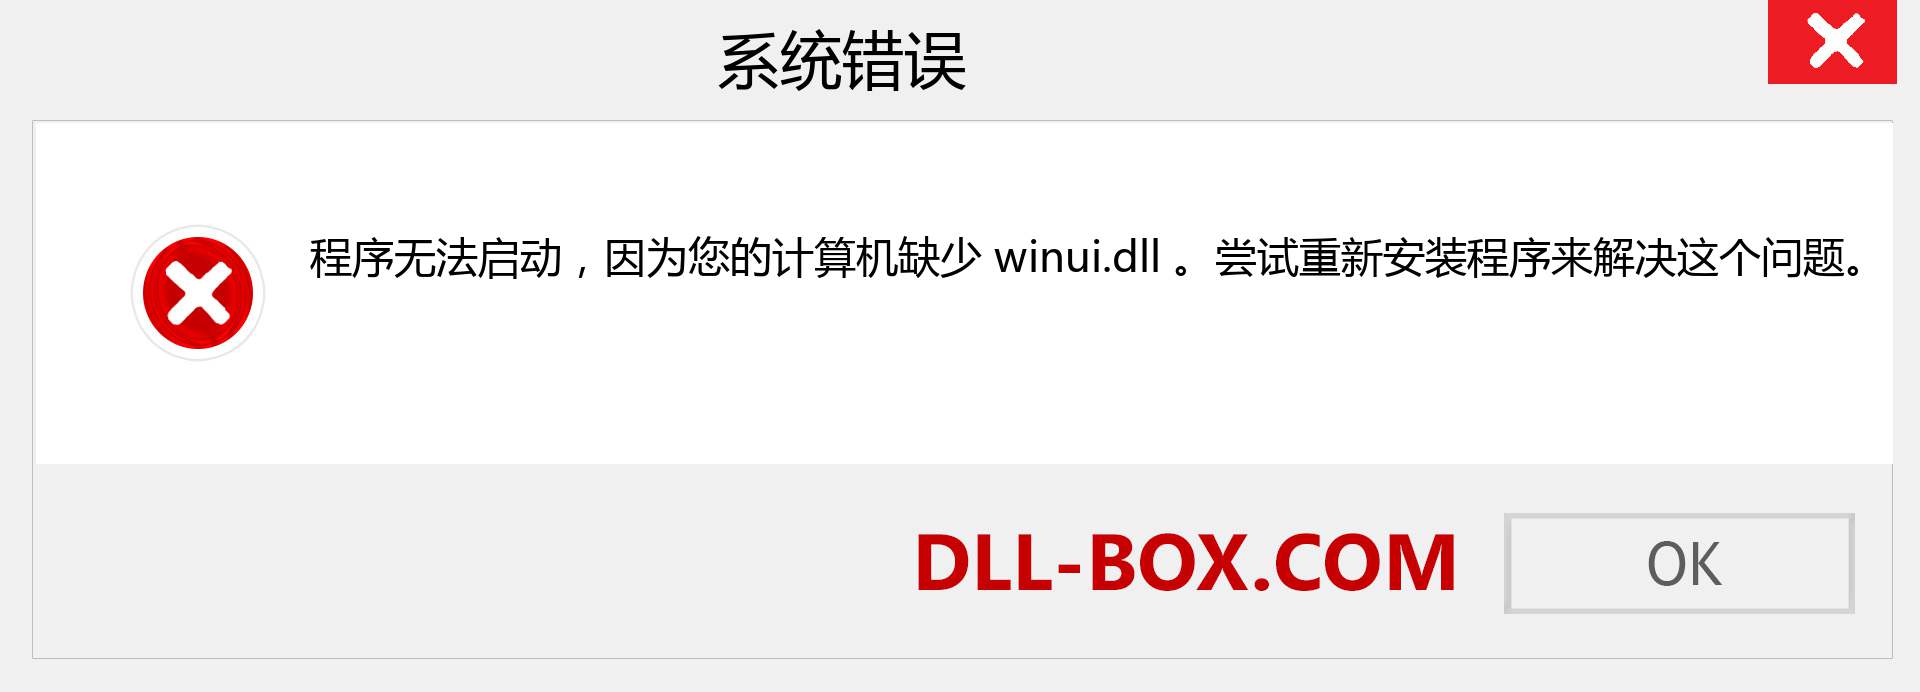 winui.dll 文件丢失？。 适用于 Windows 7、8、10 的下载 - 修复 Windows、照片、图像上的 winui dll 丢失错误